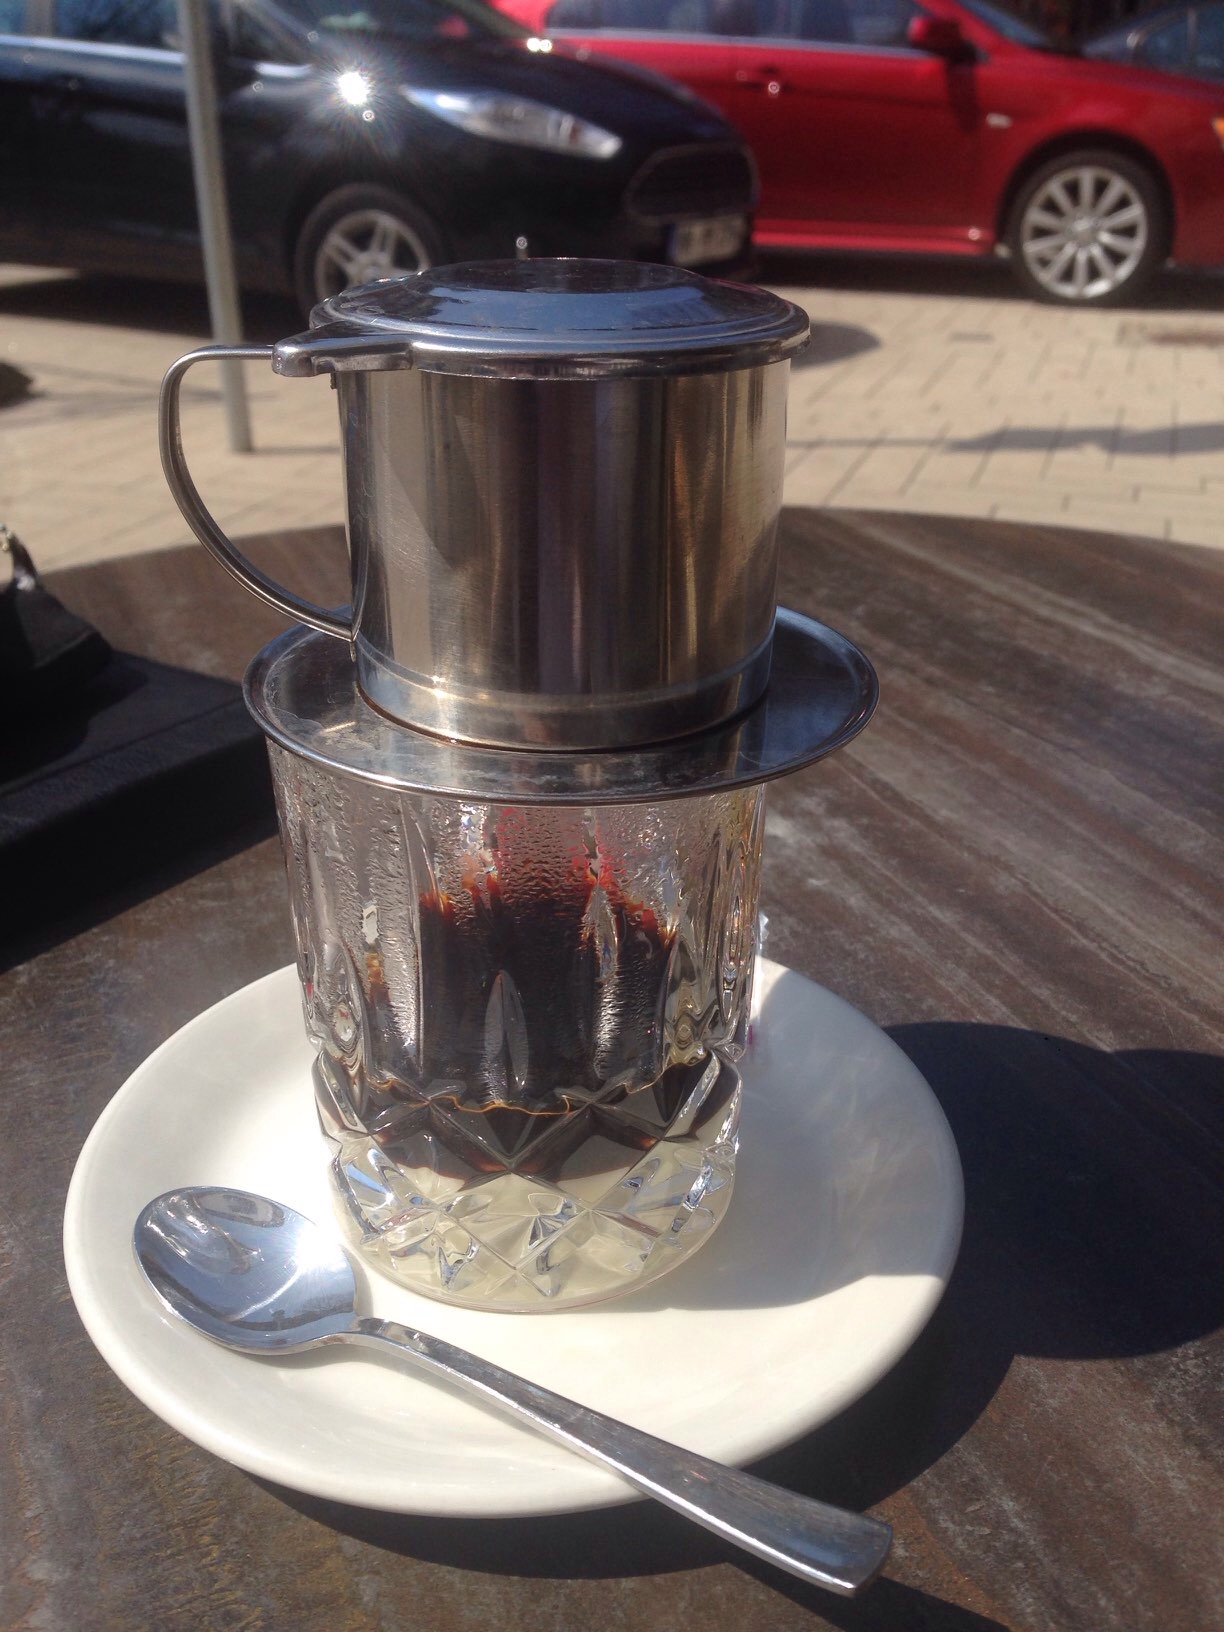 Die Krönung zum Schluss: Einen Saigon-Kaffee in der Sonne :-)